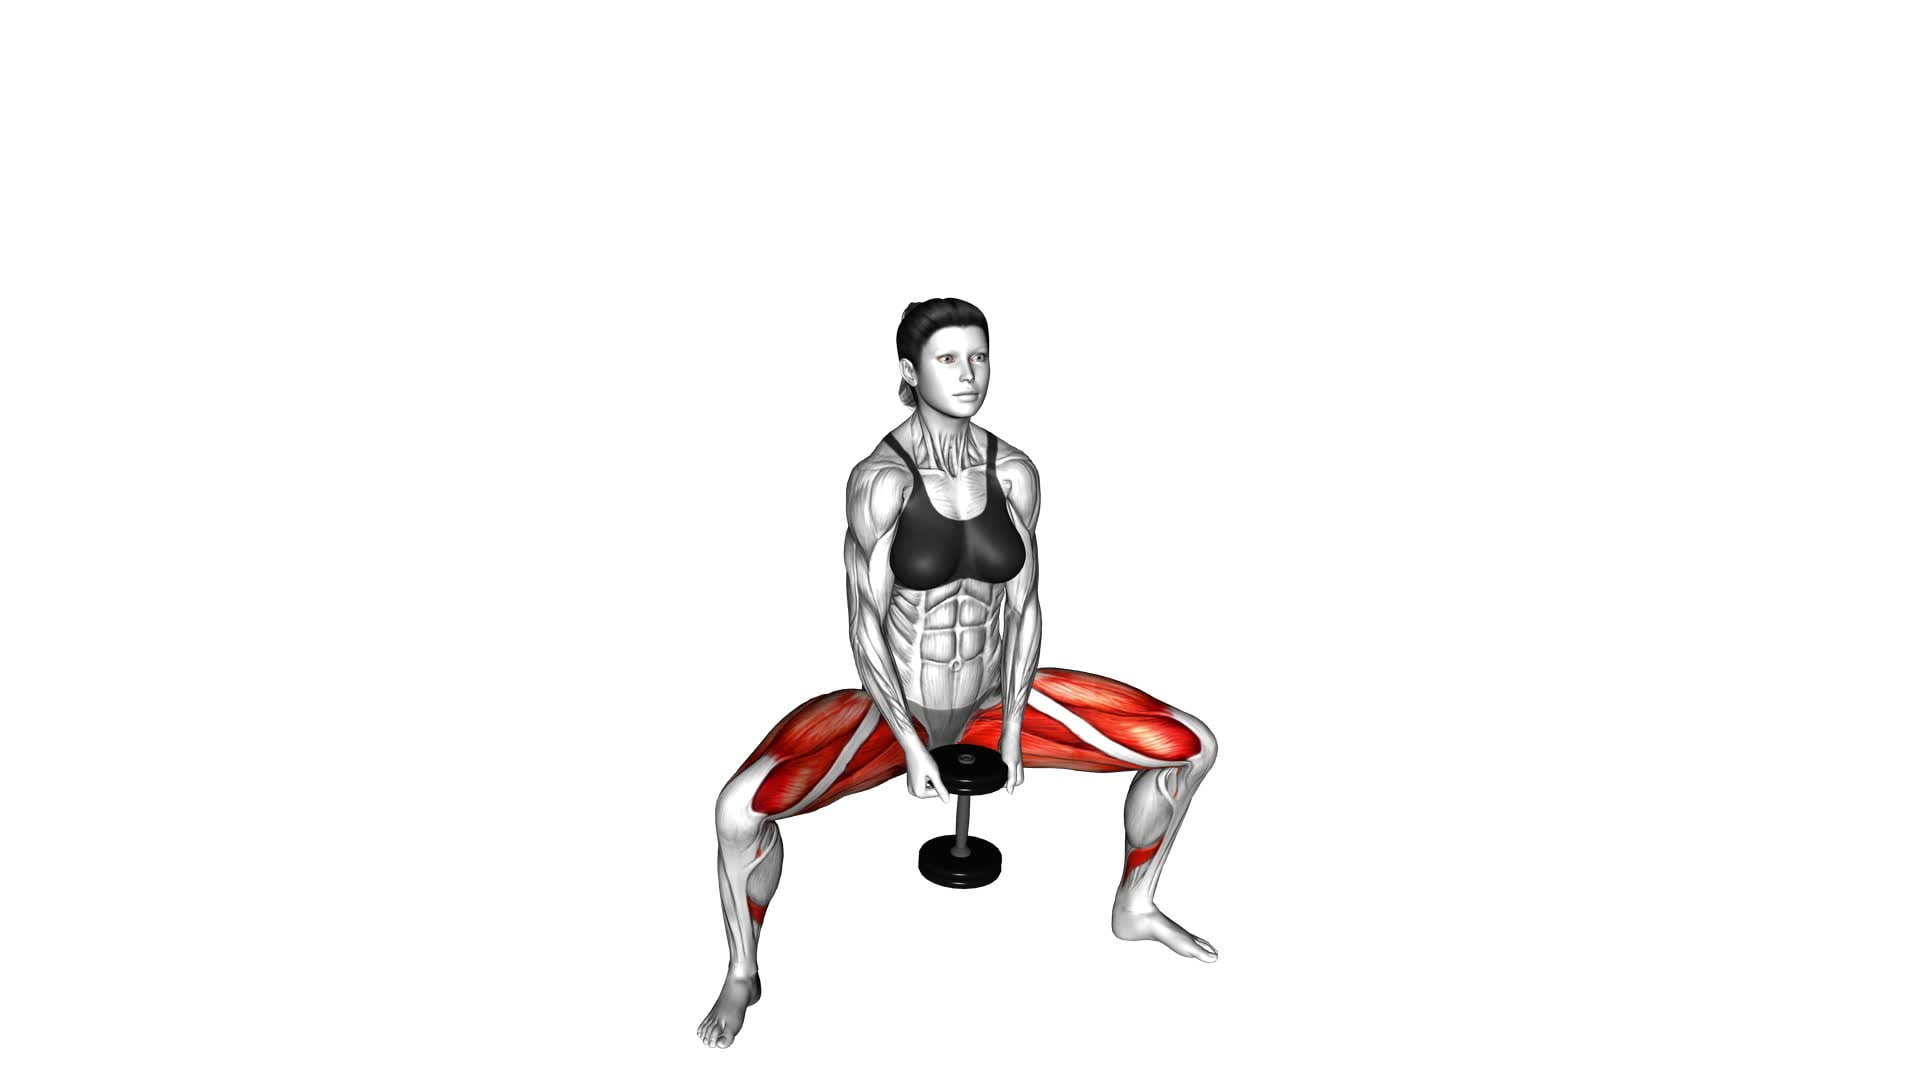 Dumbbell Plyo Squat (female) - Video Exercise Guide & Tips